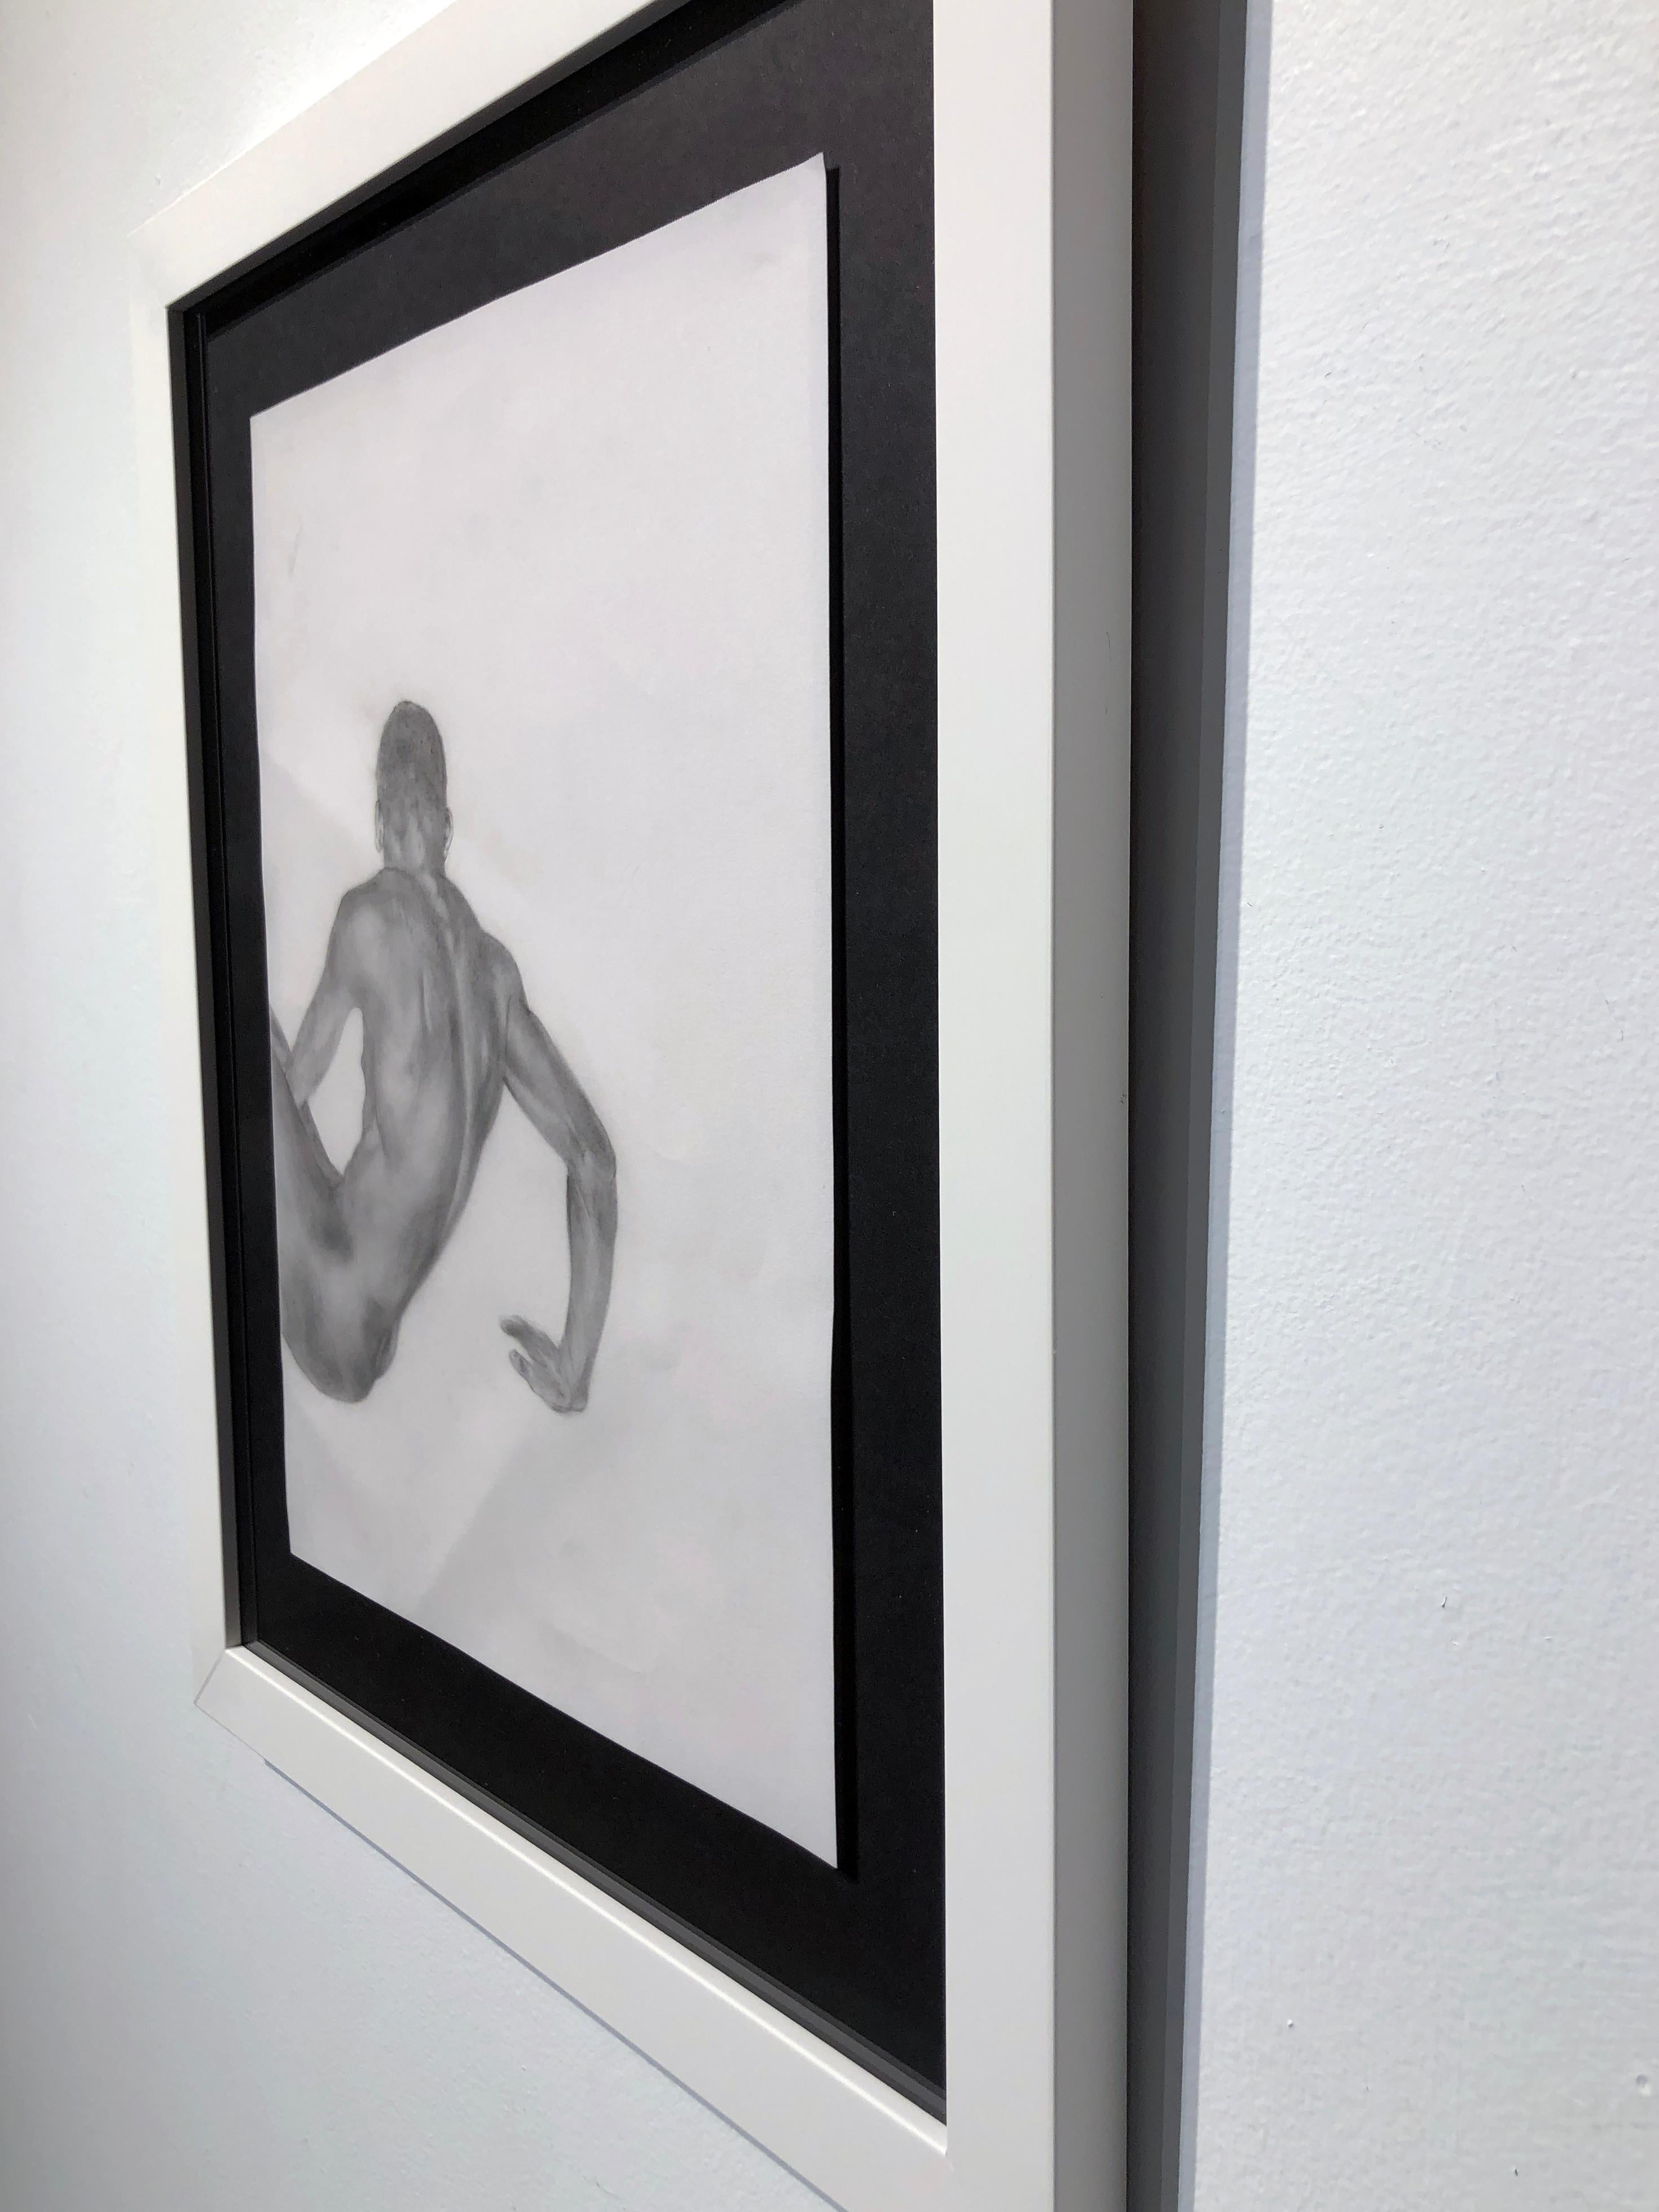 Le corps est une histoire - Nu masculin musculaire, dessin en graphite sur papier - Contemporain Art par Rick Sindt